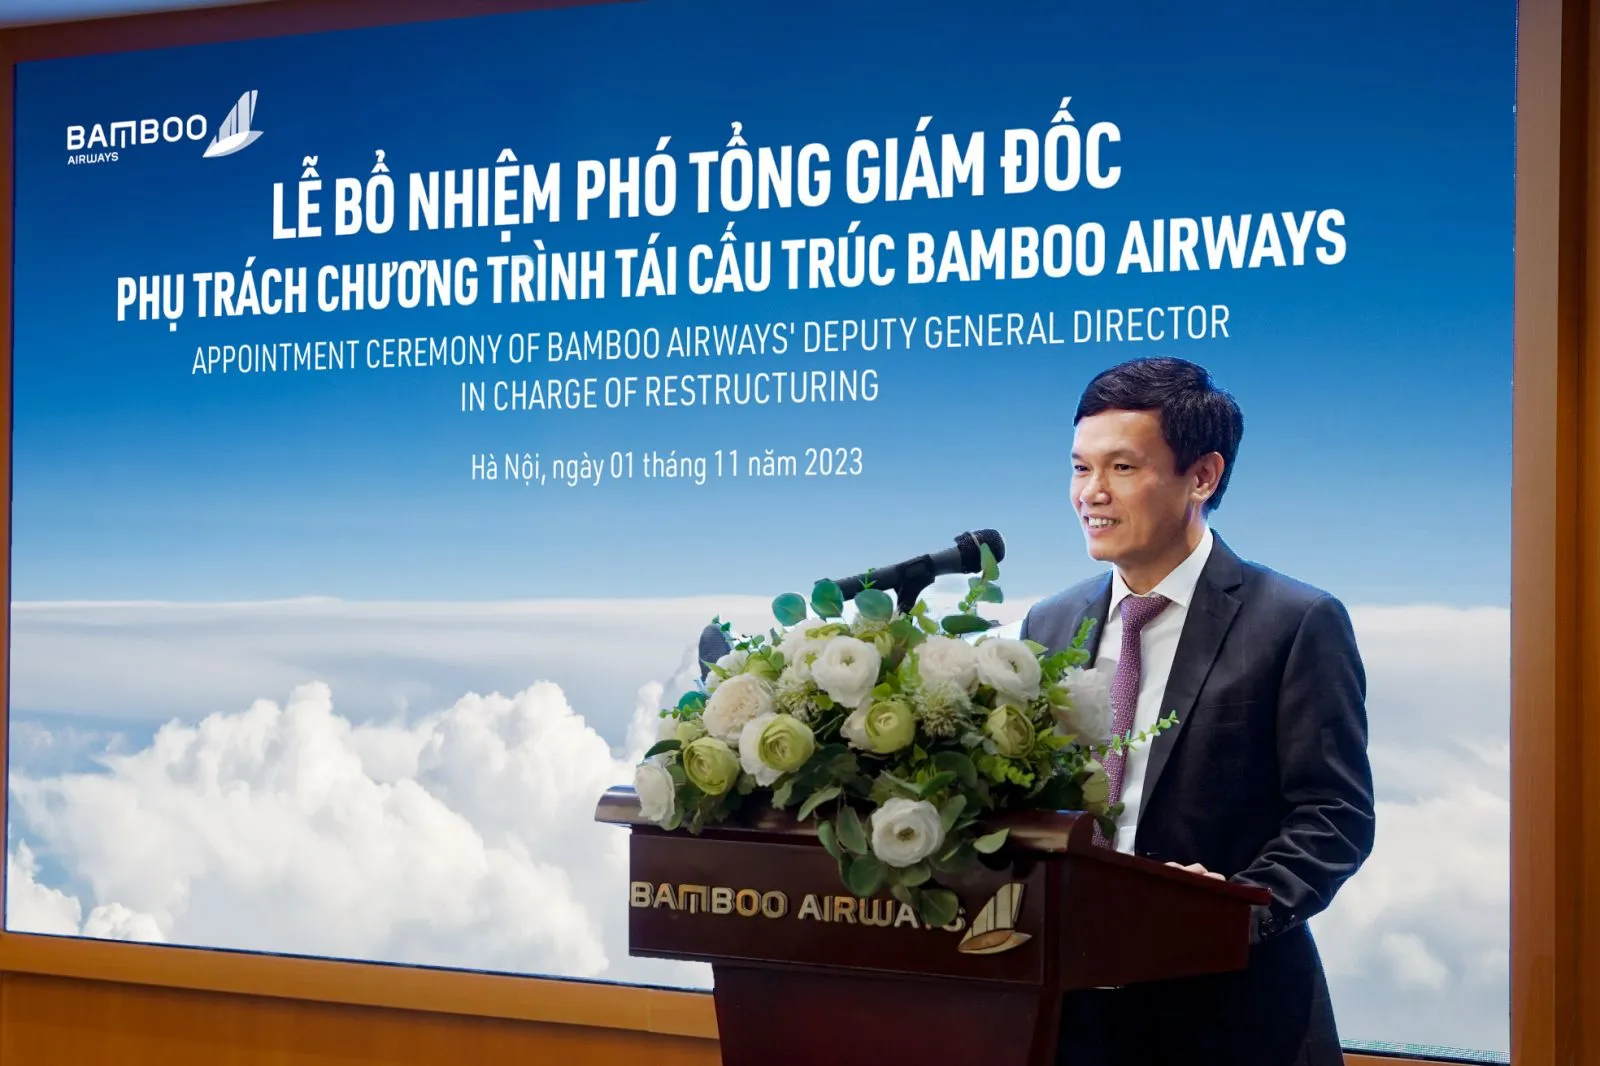 Bamboo Airways bổ nhiệm Phó Tổng giám đốc phụ trách chương trình tái cơ cấu